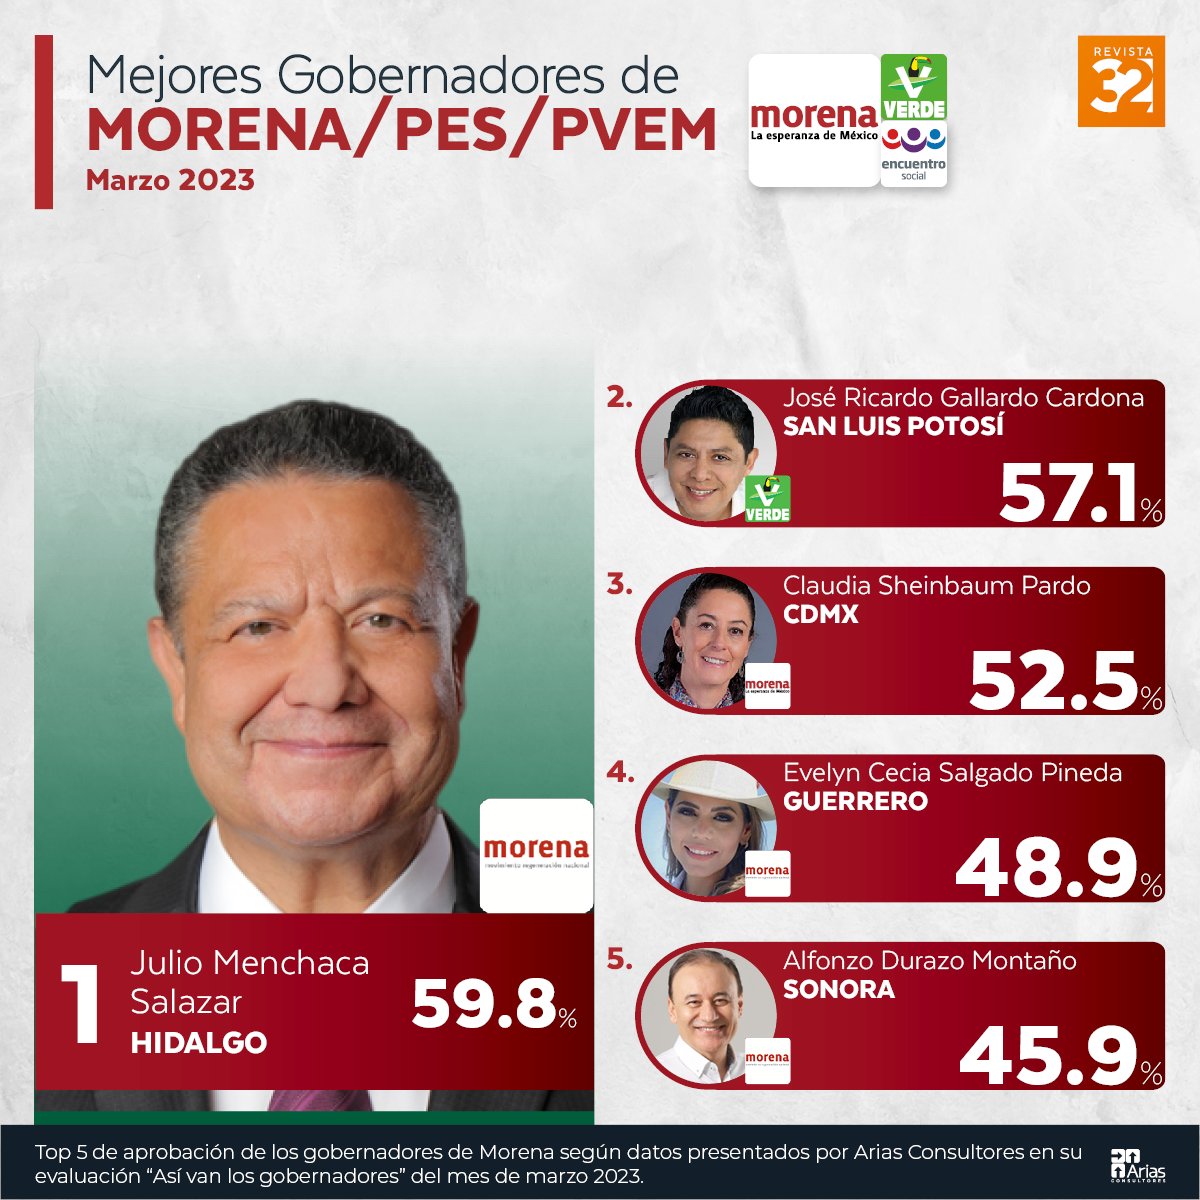 Julio Menchaca, Gobernador de Hidalgo, ha sido calificado como el mejor gobernador dentro de los representantes del partido Morena.